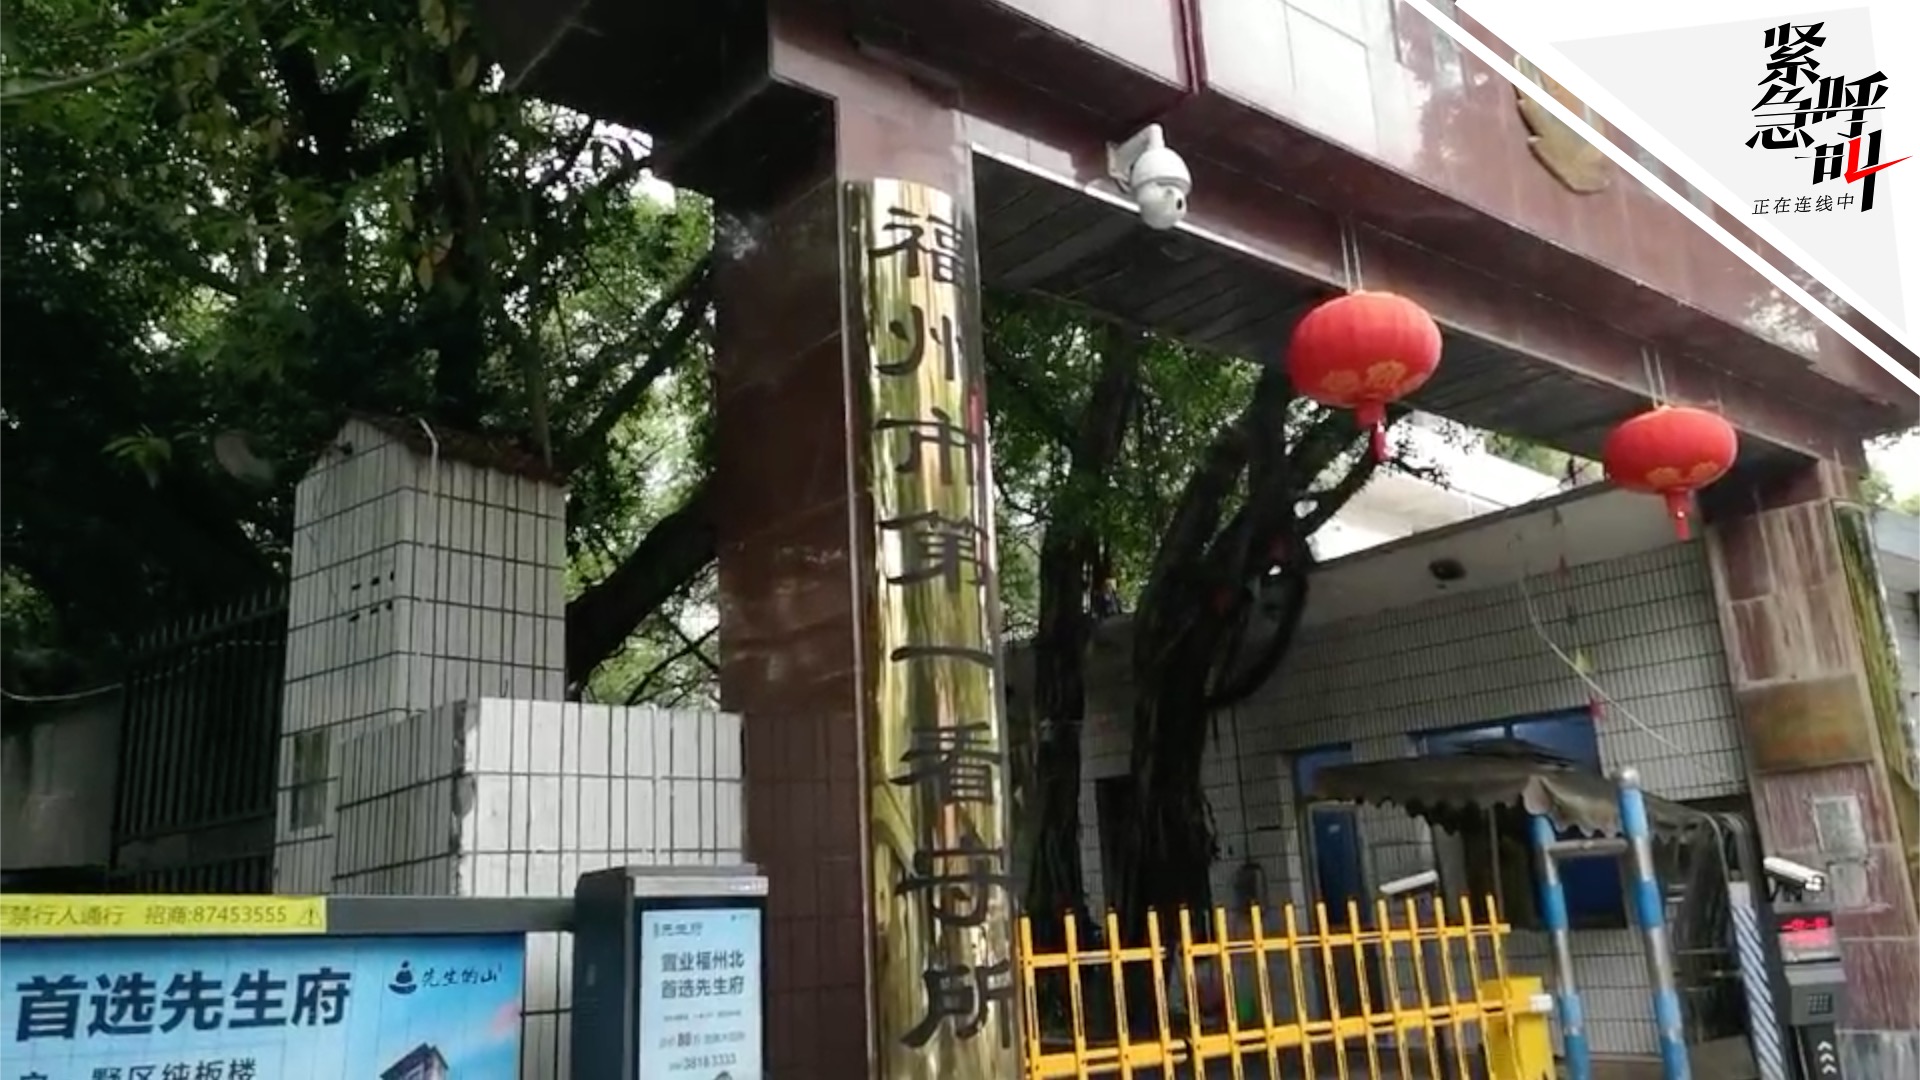 吴谢宇被羁押在福州第一看守所 律师:或被认定故意杀人